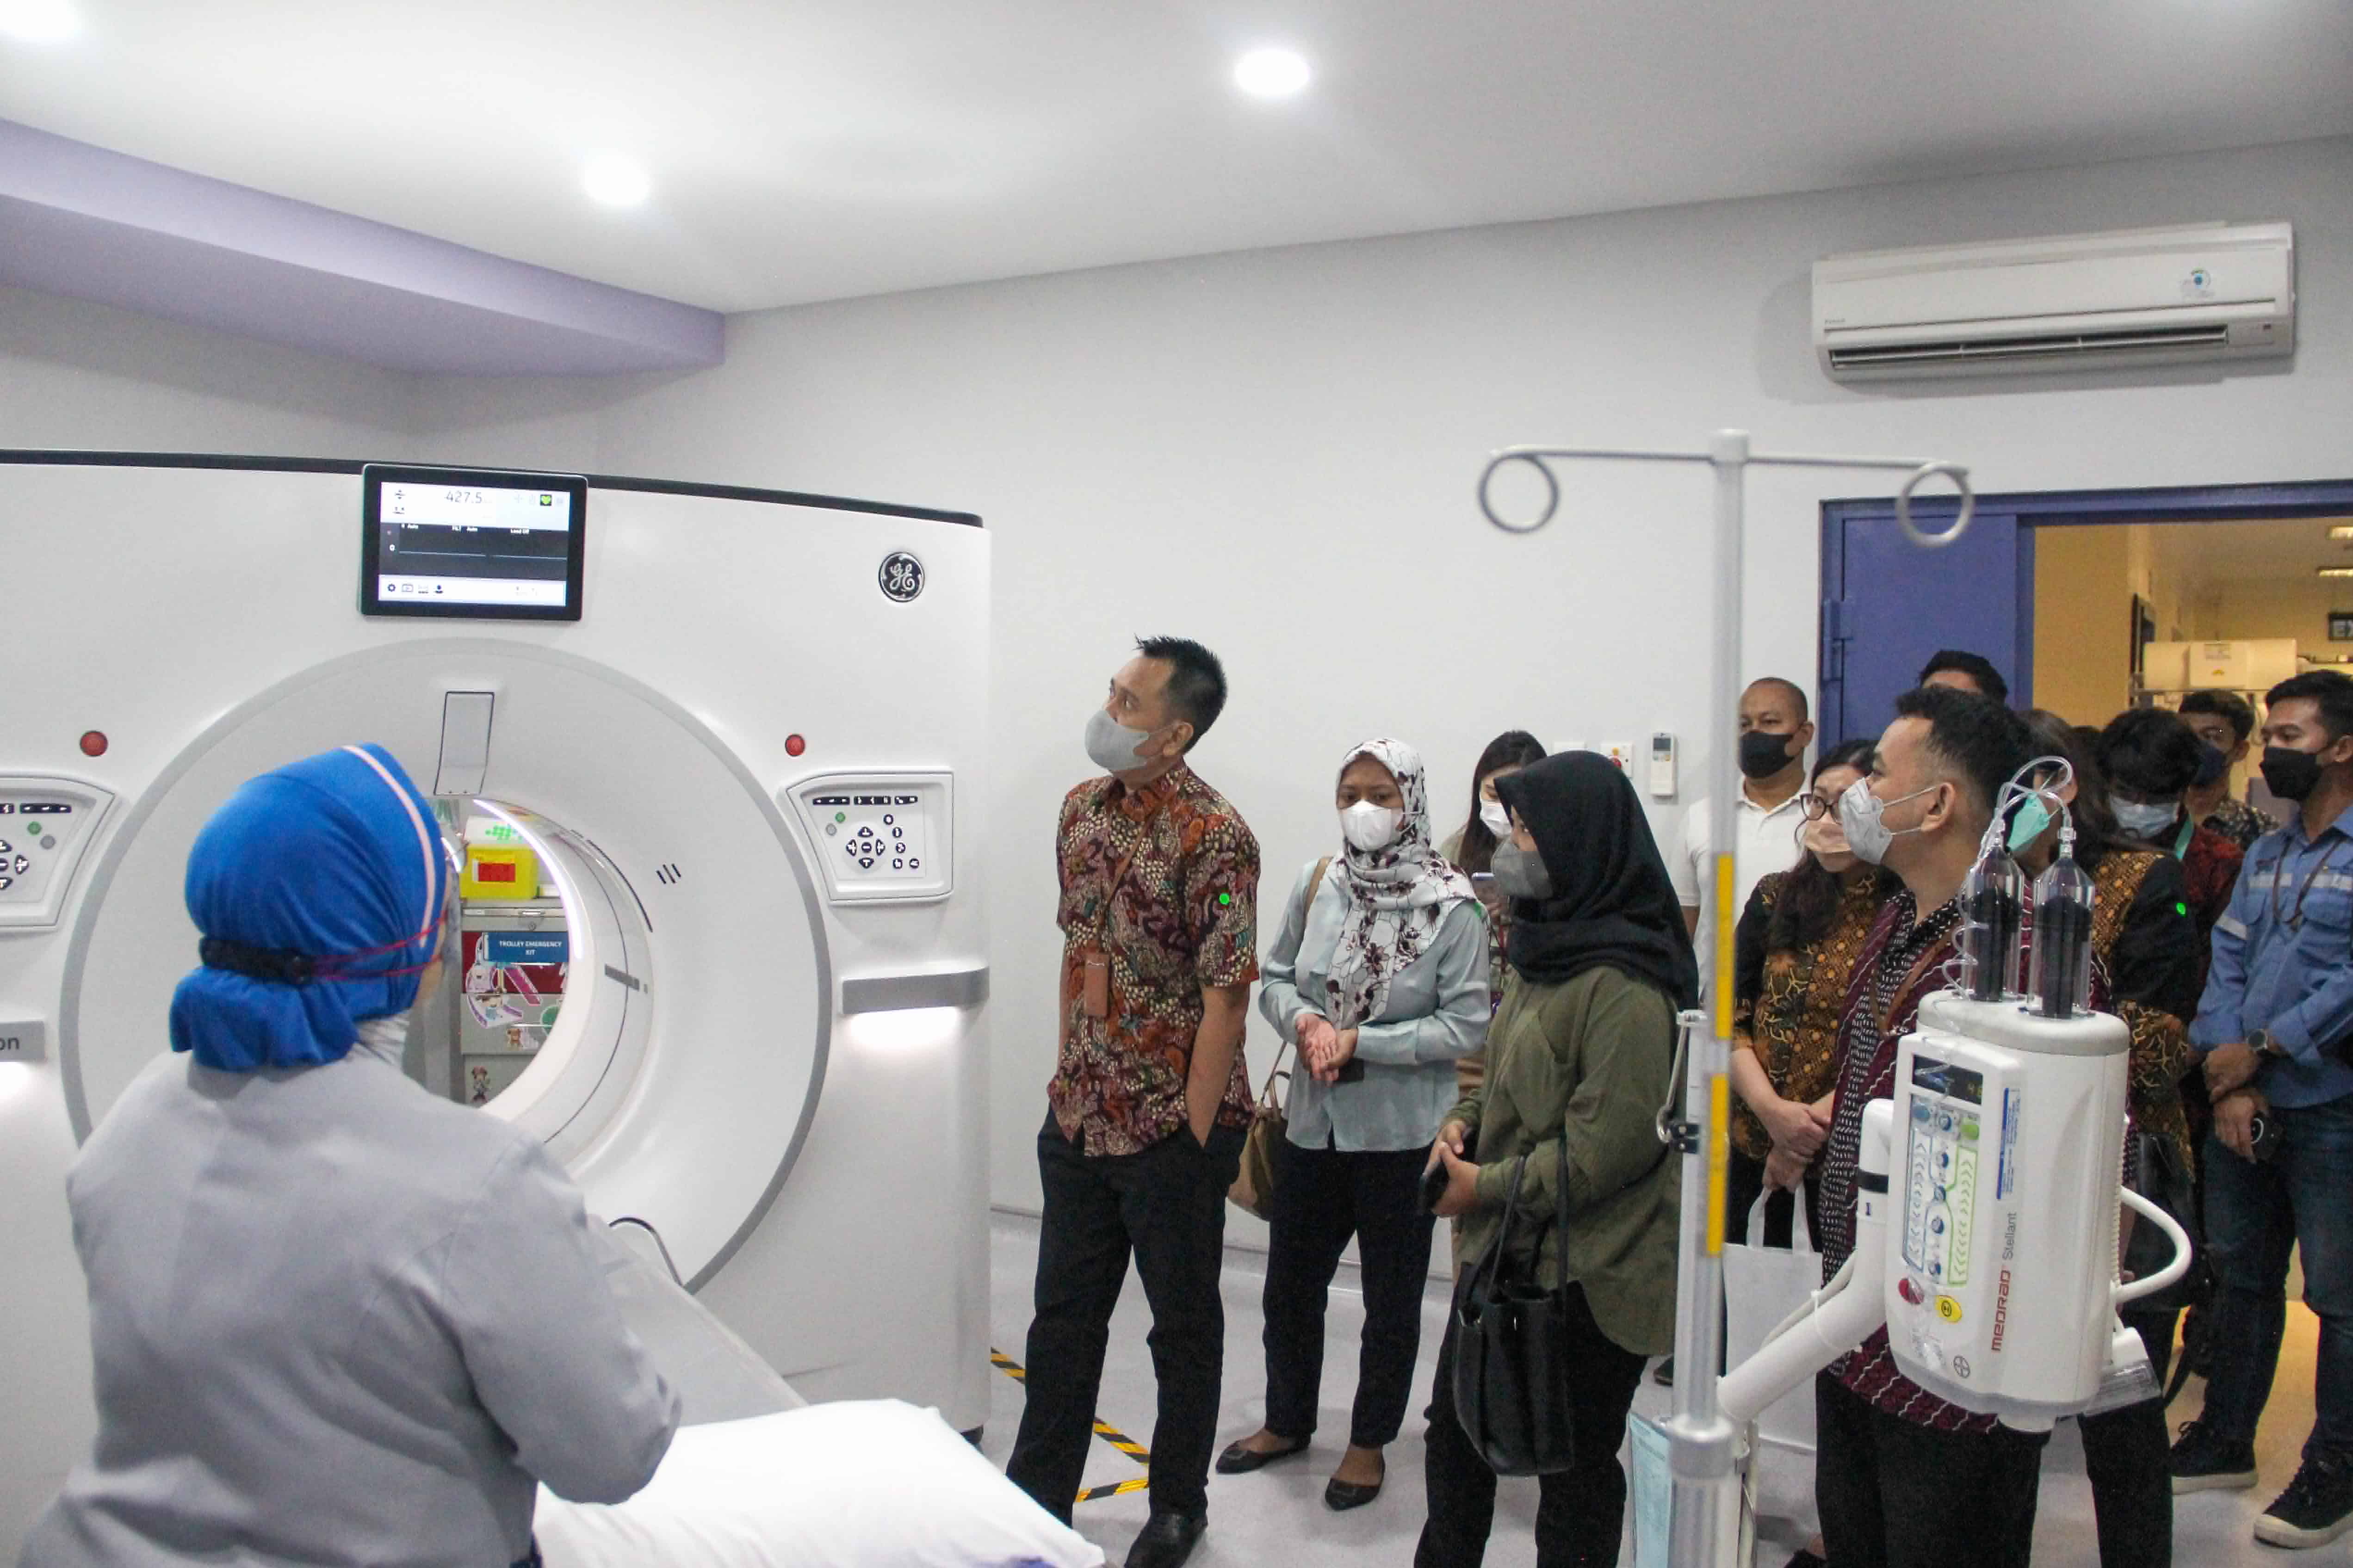 Rumah Sakit Premier Jadi Yang Ketiga Operasikan Teknologi Terbaru CT Scan 512 Slices 